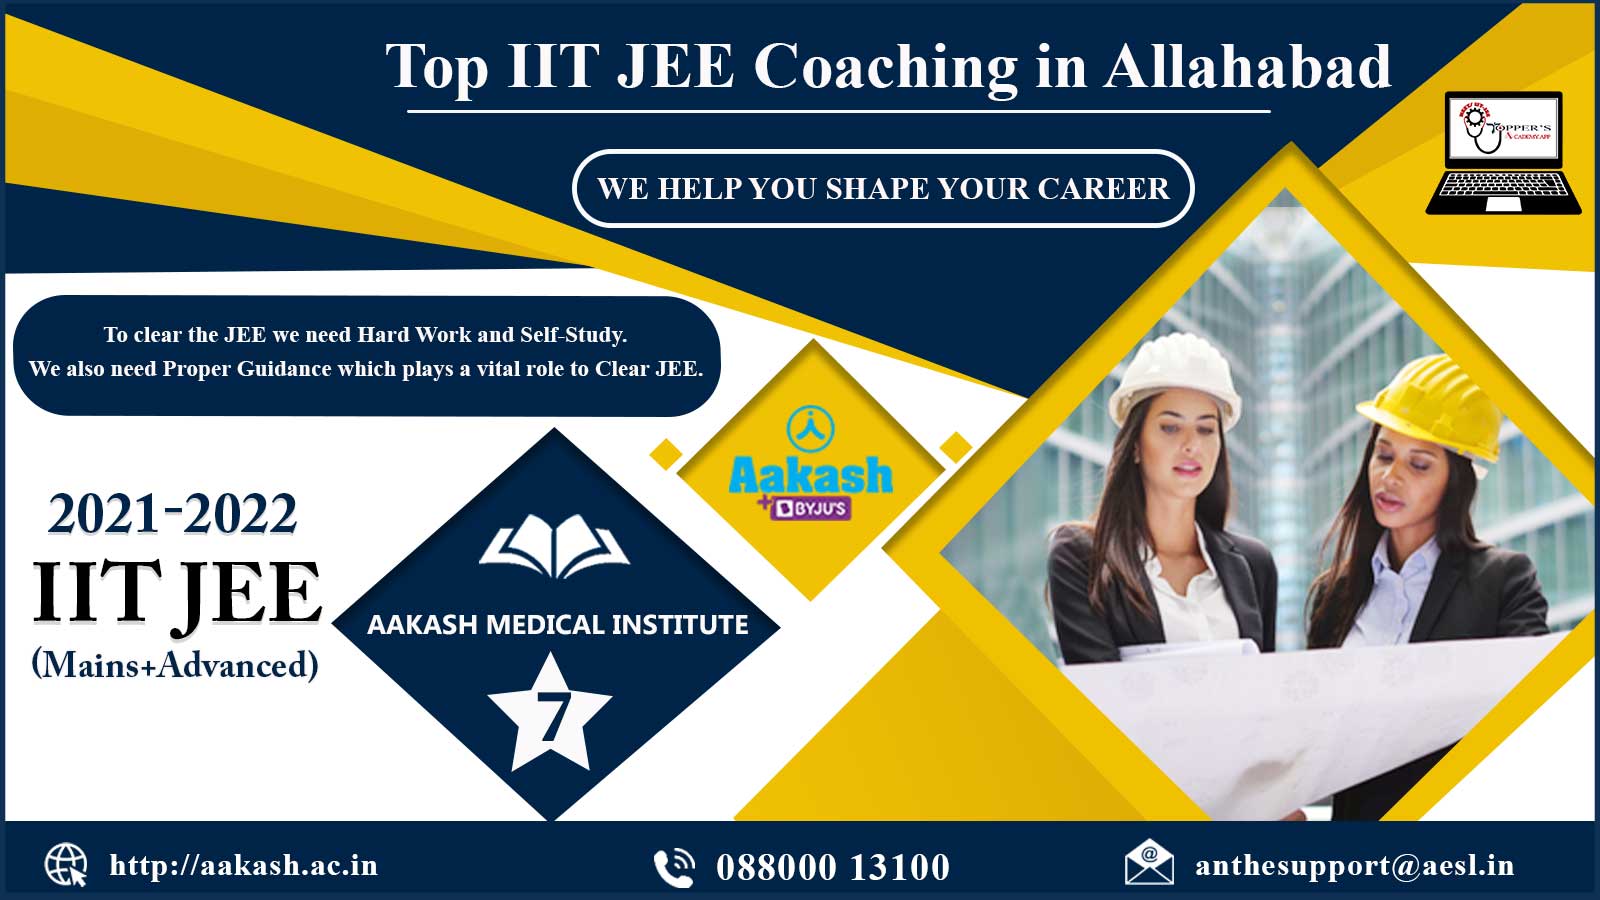 Aakash IIT JEE Coaching in Allahabad